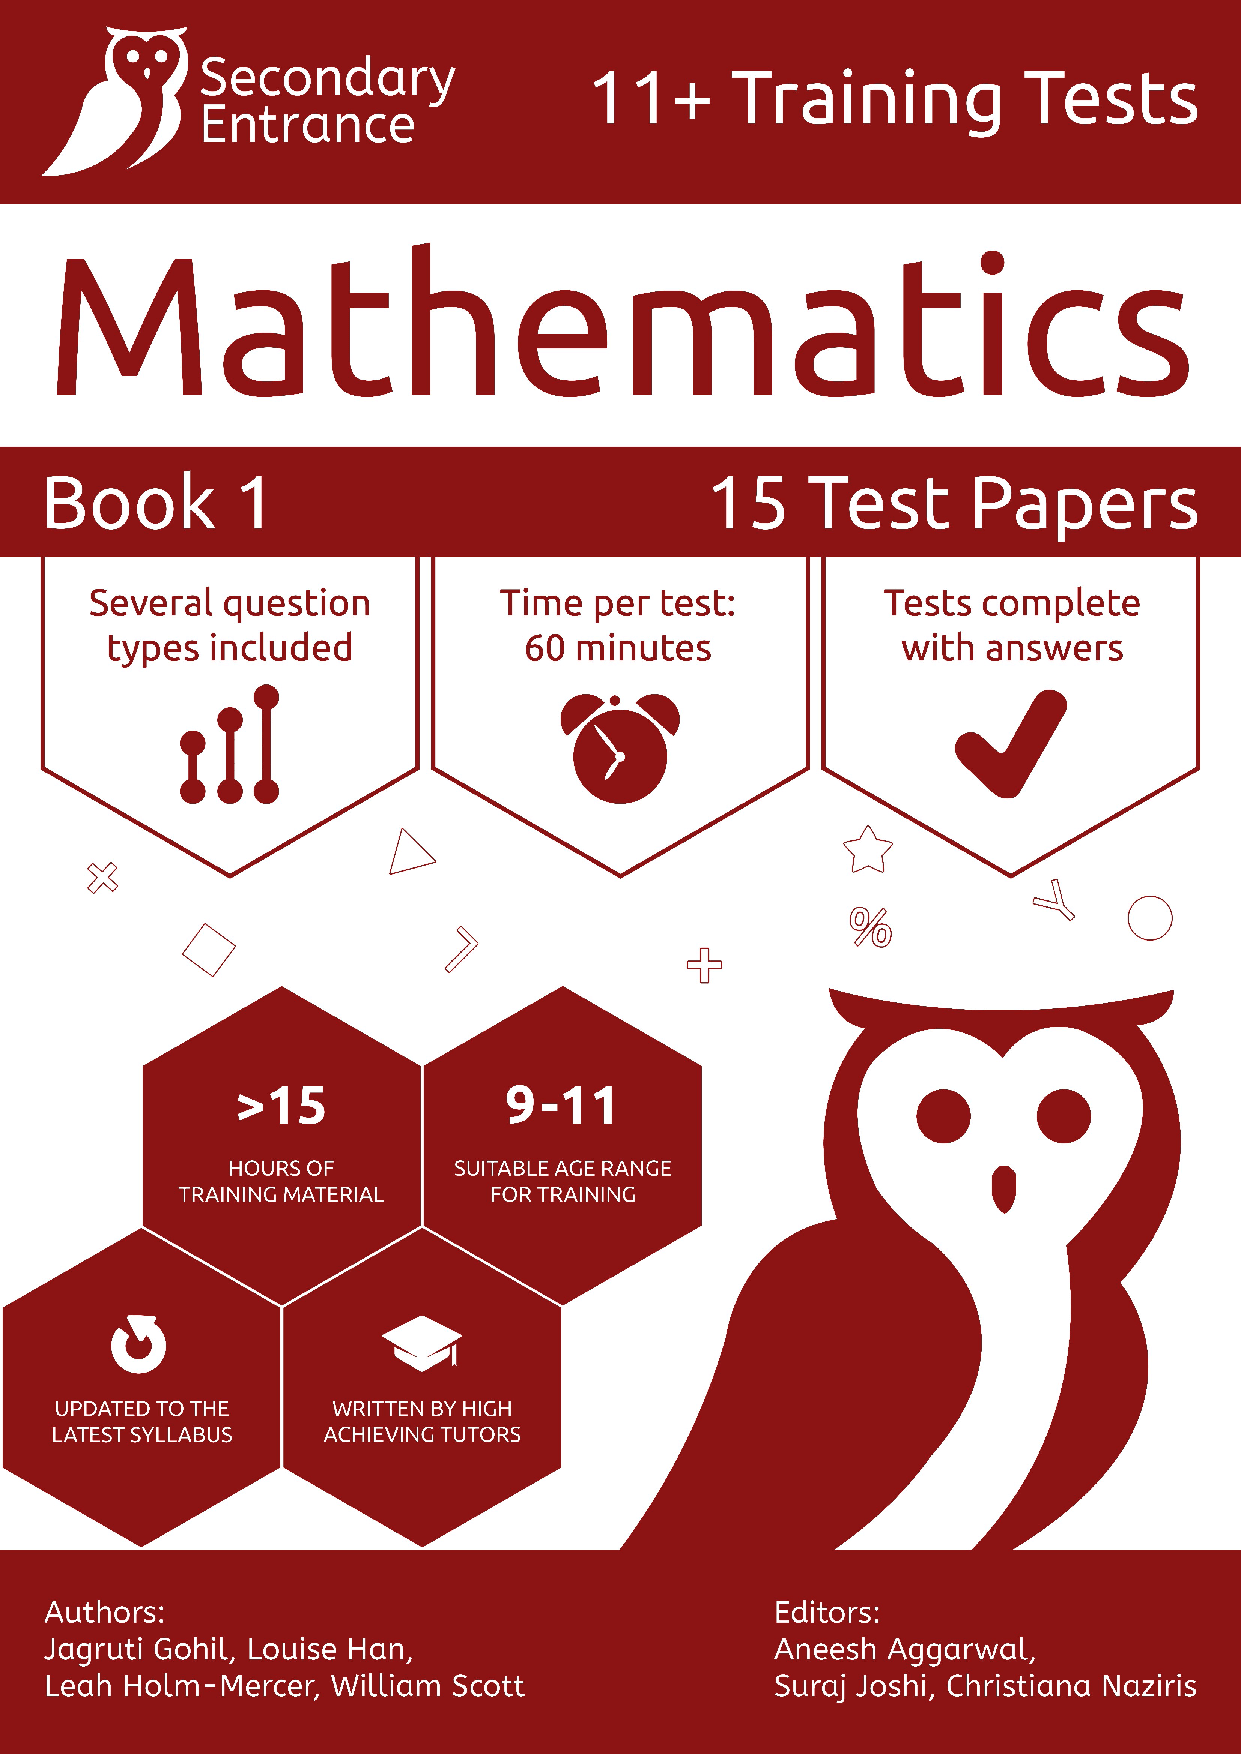 11+ Maths syllabus